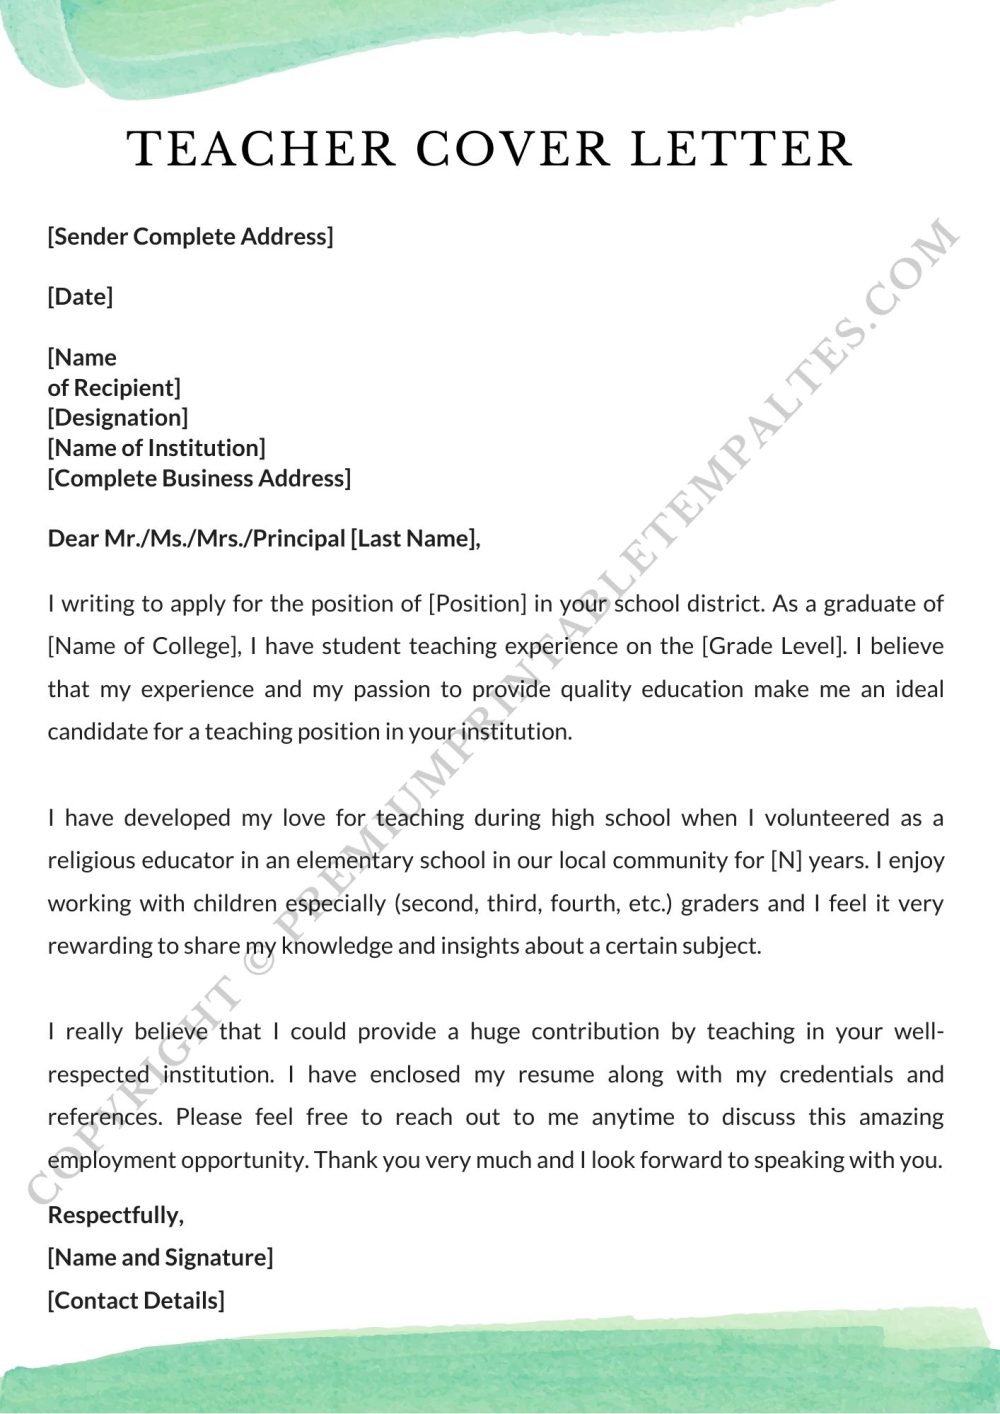 Teacher Cover Letter Template